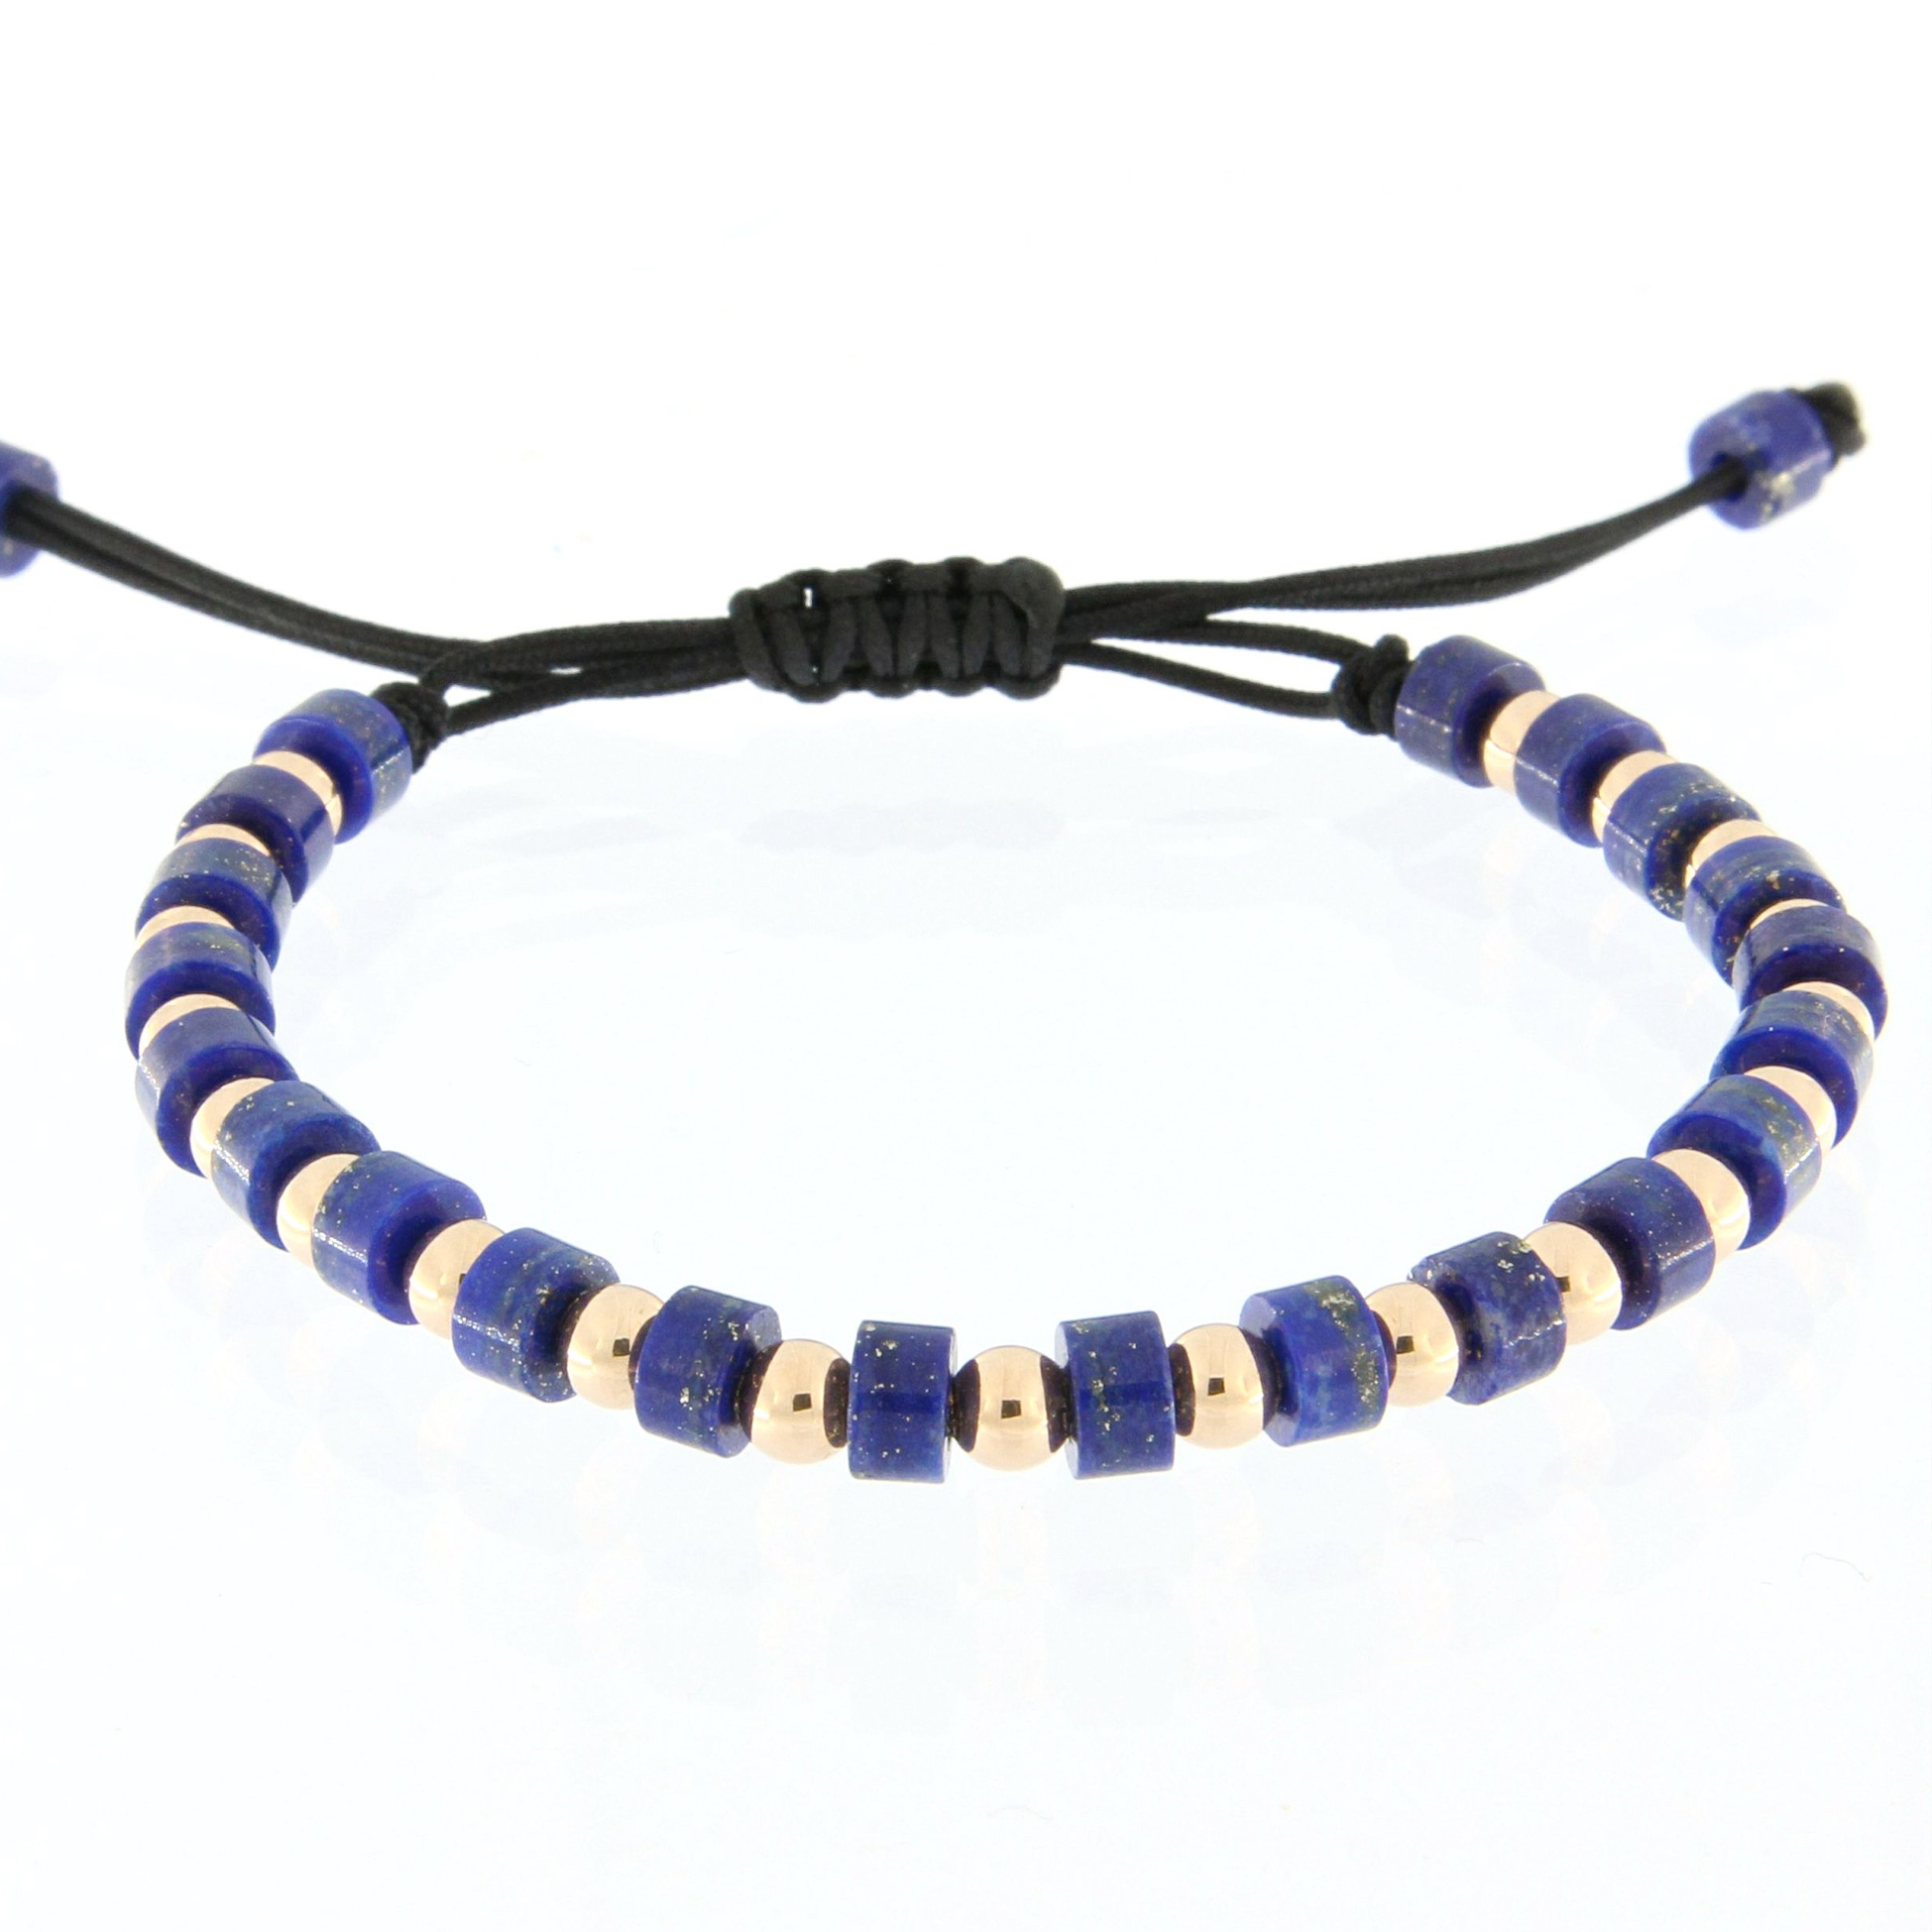 Pulsera de hilo con lapislázuli como una de las joyas de verano